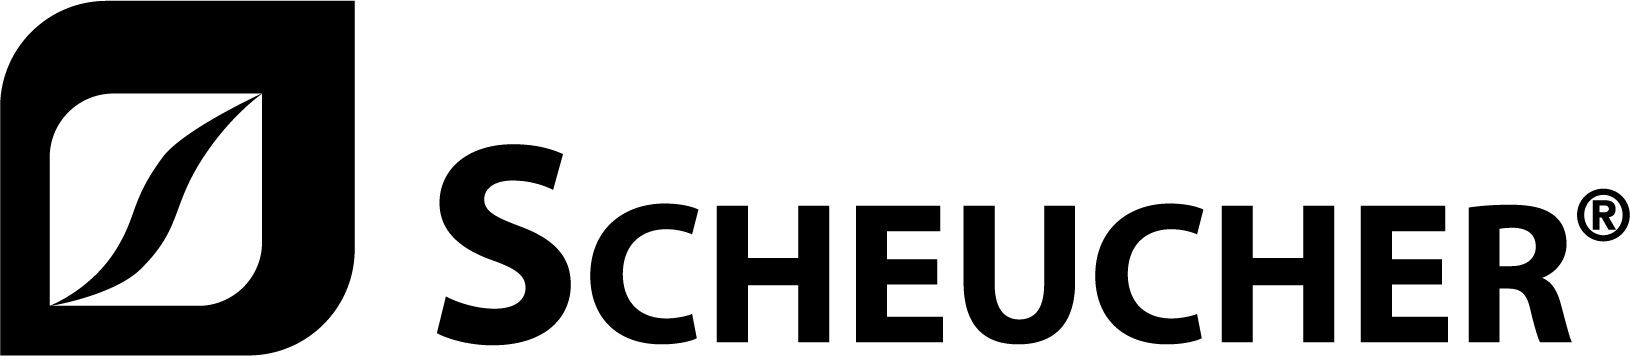 Scheucher логотип